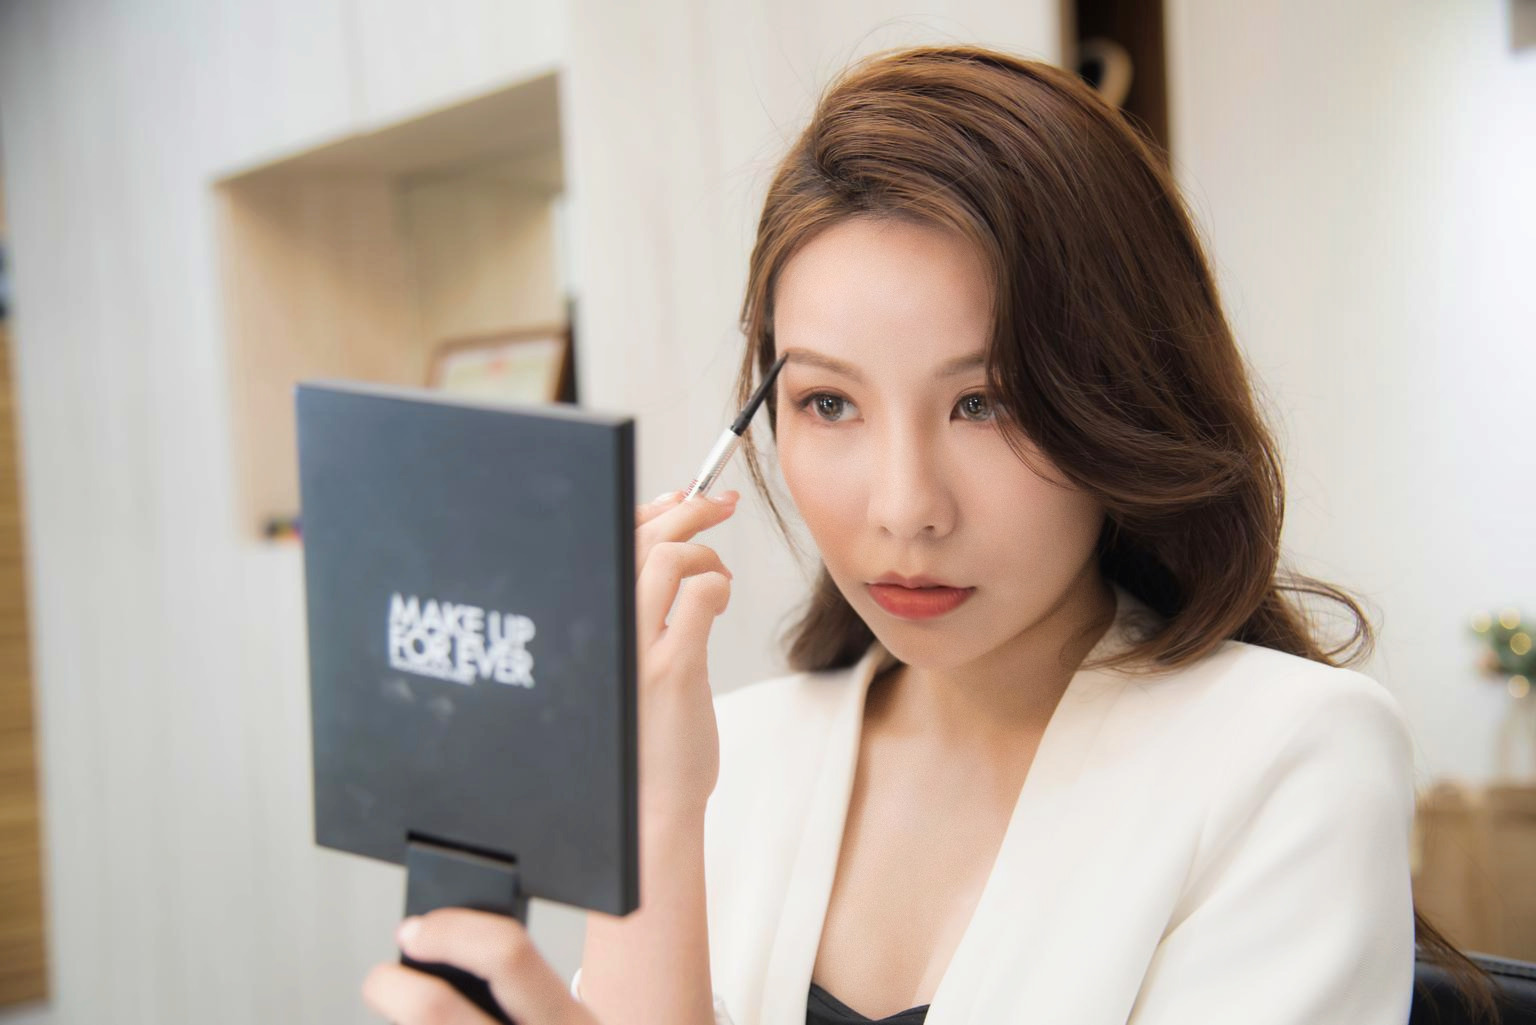 台北彩妝課程推薦 透過化妝課程學習 提升自己的化妝能力和技巧